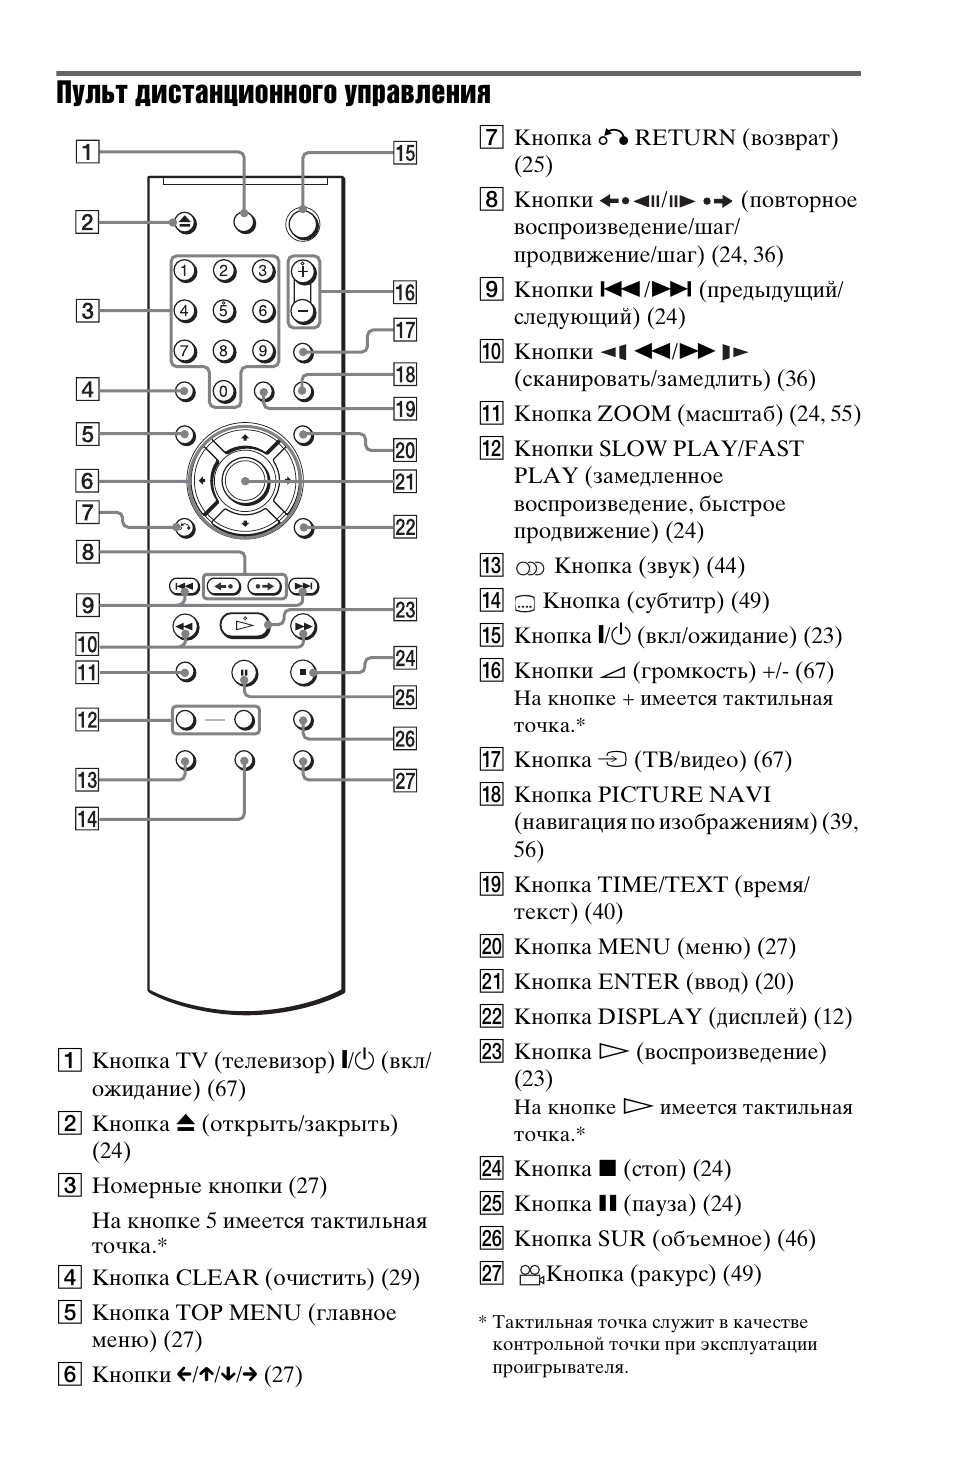 Пульт сони настройка. Пульт Ду RC-500f. Управление пульт RMT-tx300e. Пульт от телевизора Sony инструкция. Sony DVP ns308 пульт.